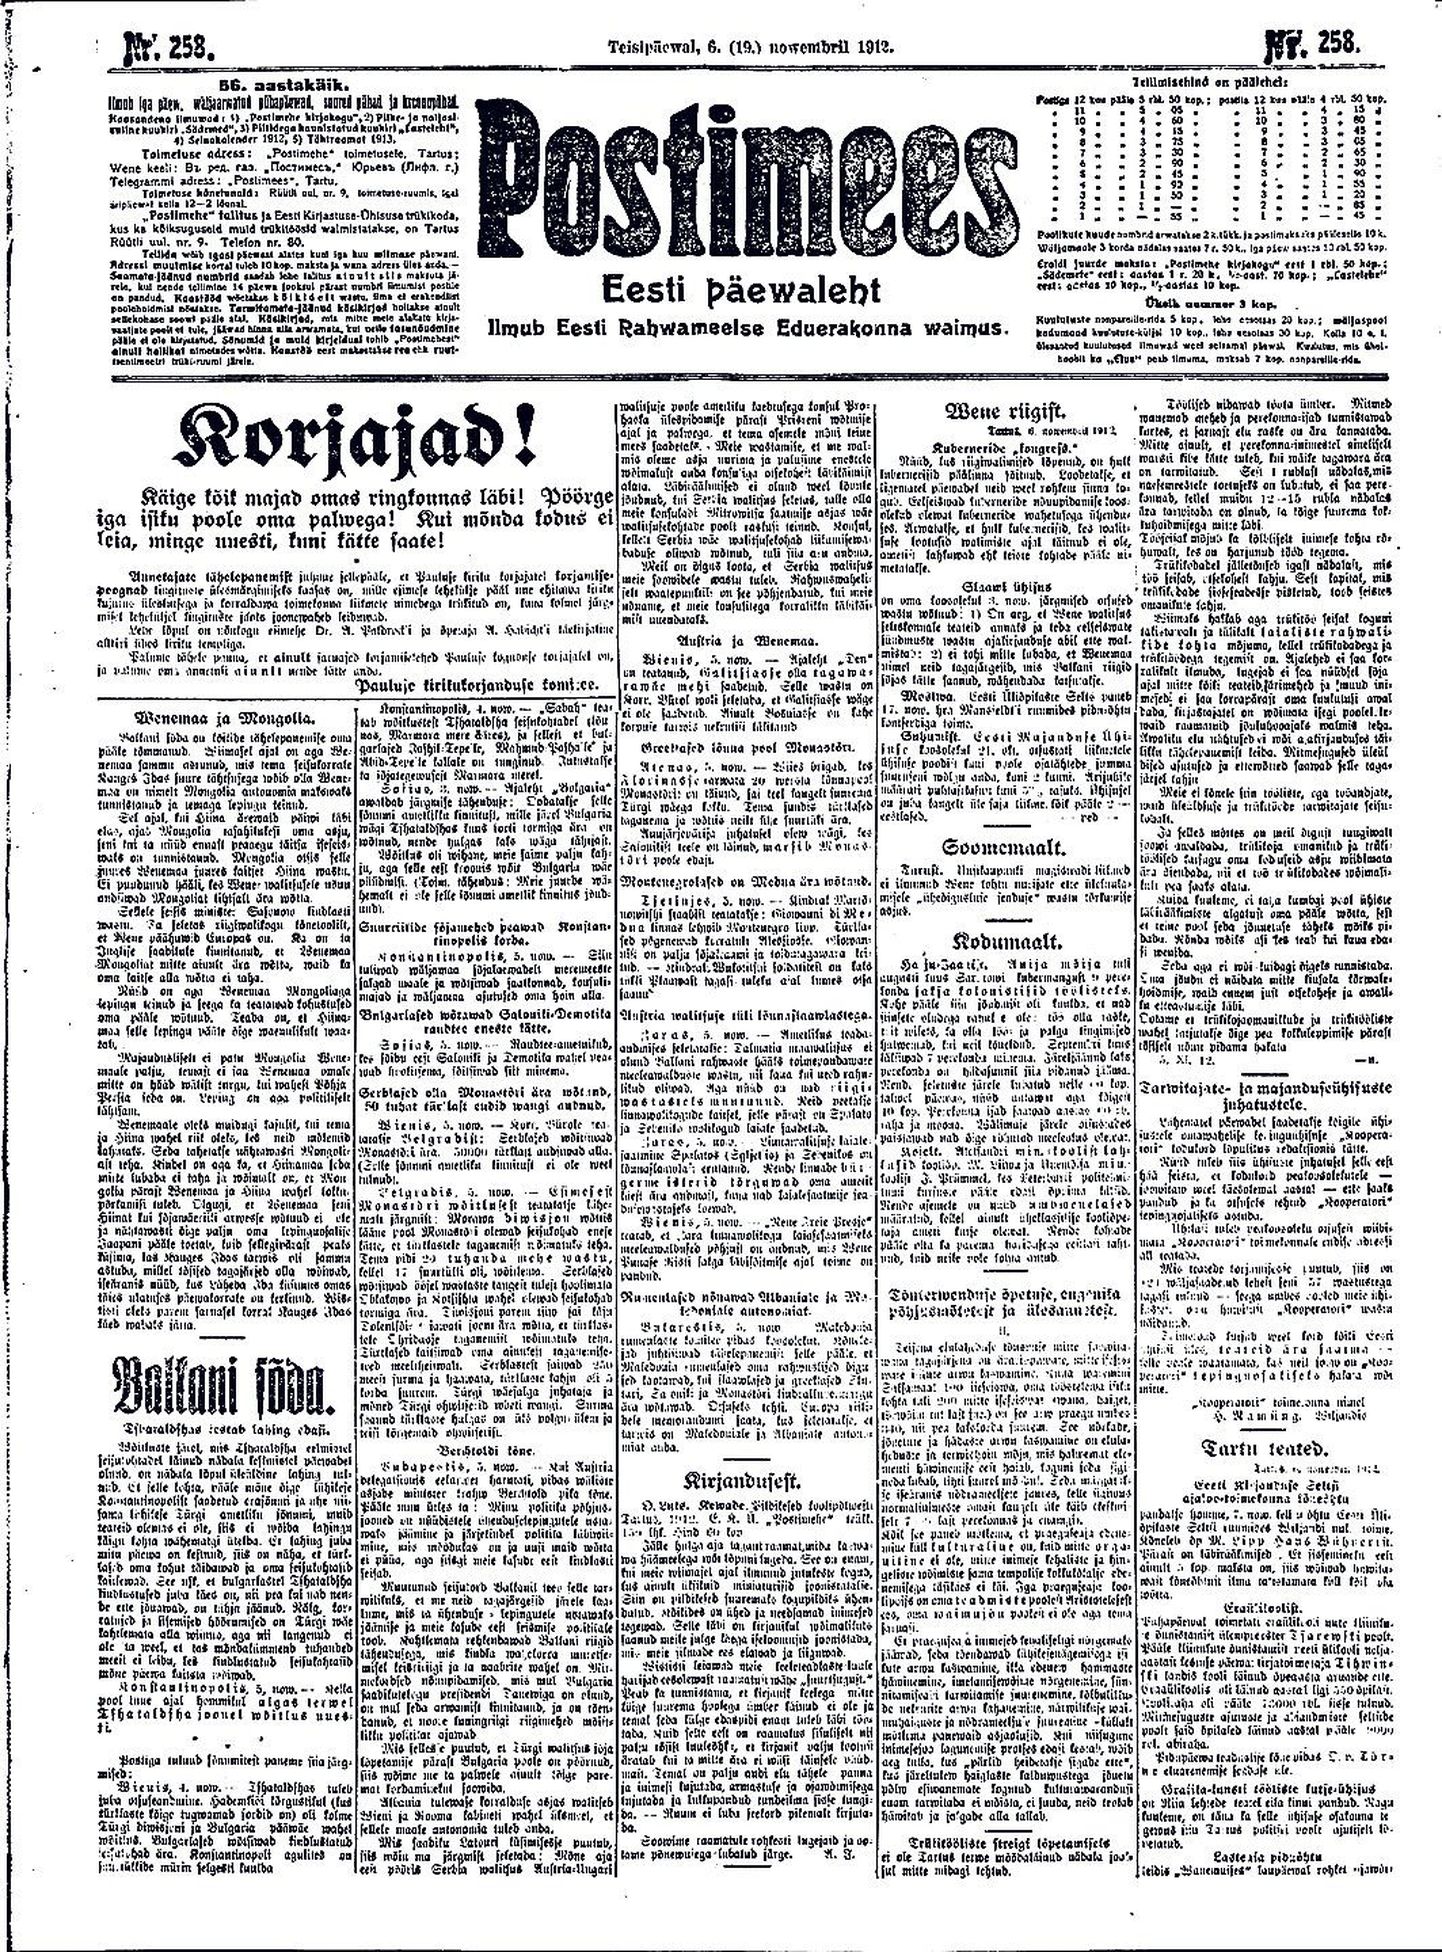 «Kewade» esimene arvustus ilmus 6. novembril 1912 Postimehe esiküljel gooti kirjas. Avaldame selle muutmata kujul siinsamas allpool tänapäevases kirjas.